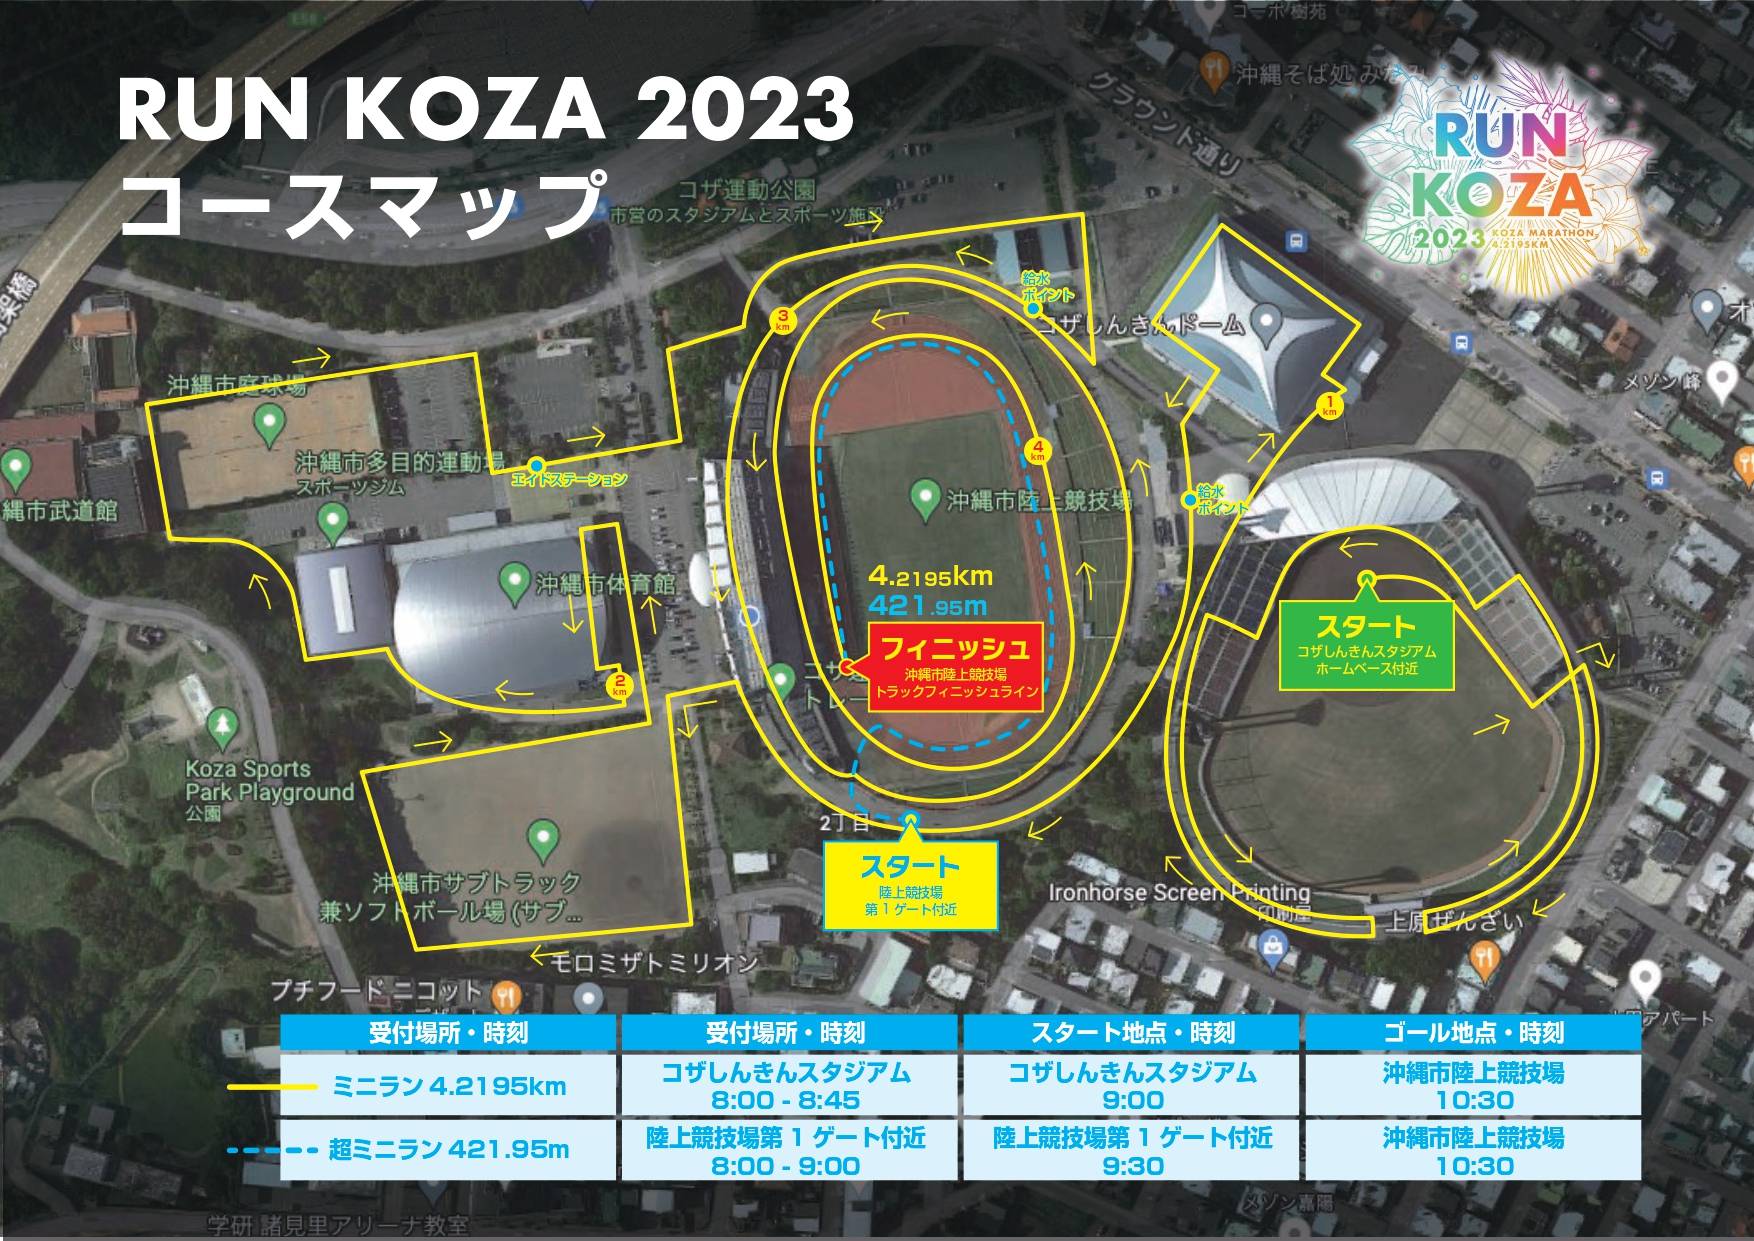 【終了しました】2023年2月12日(日)RUN KOZA開催のお知らせ